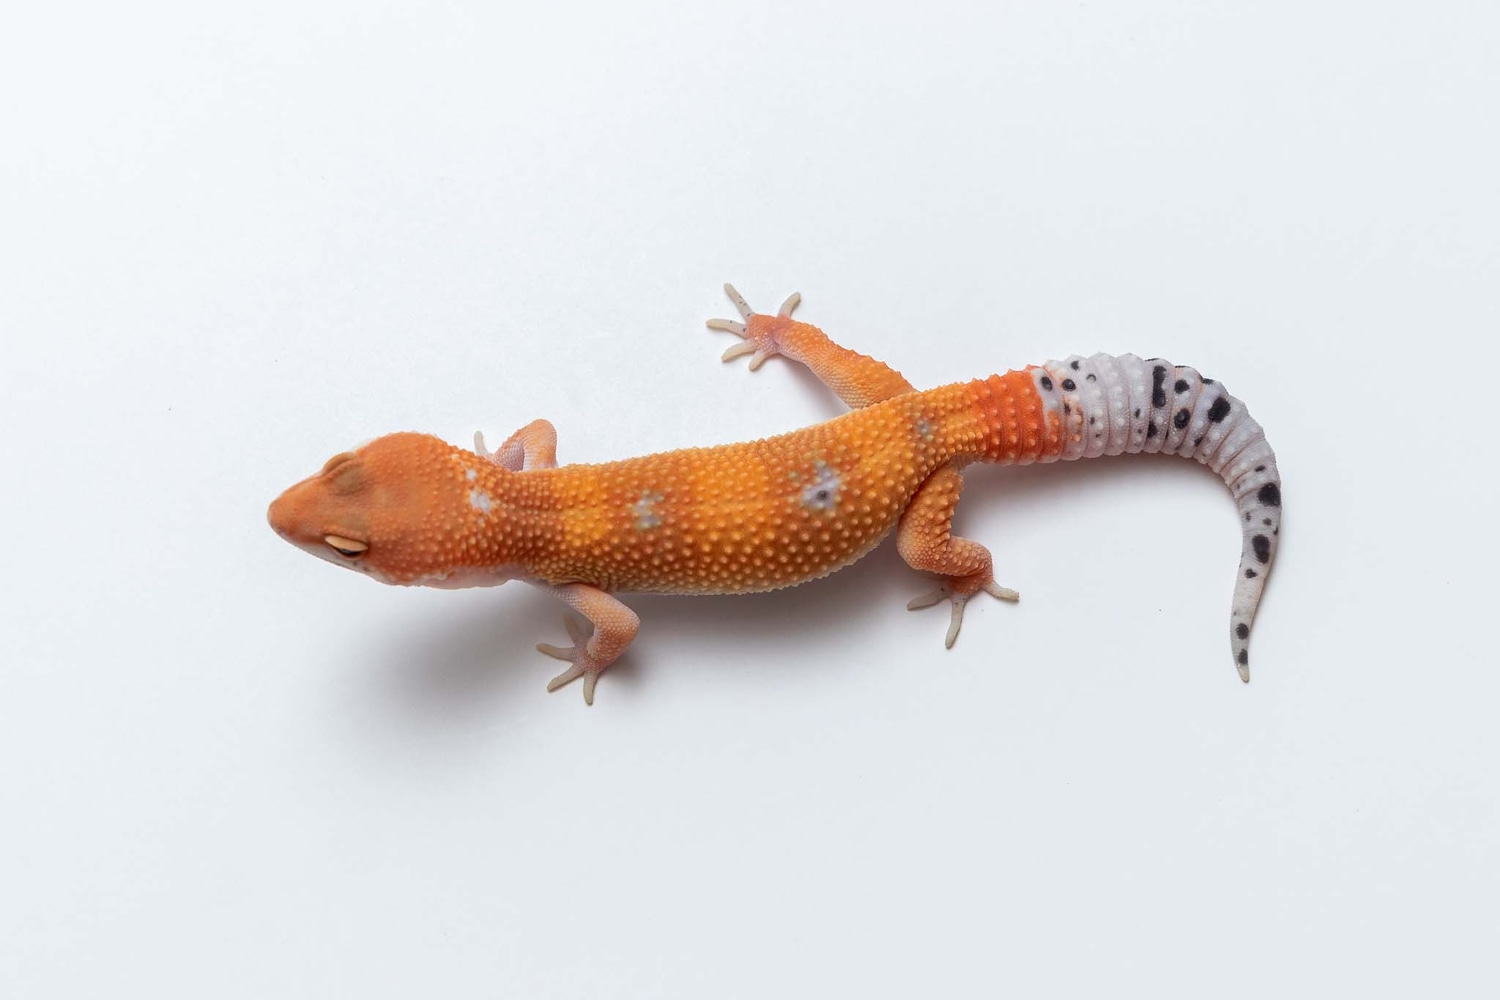 Green & Tangerine - Leopard Gecko Traits - Morphpedia